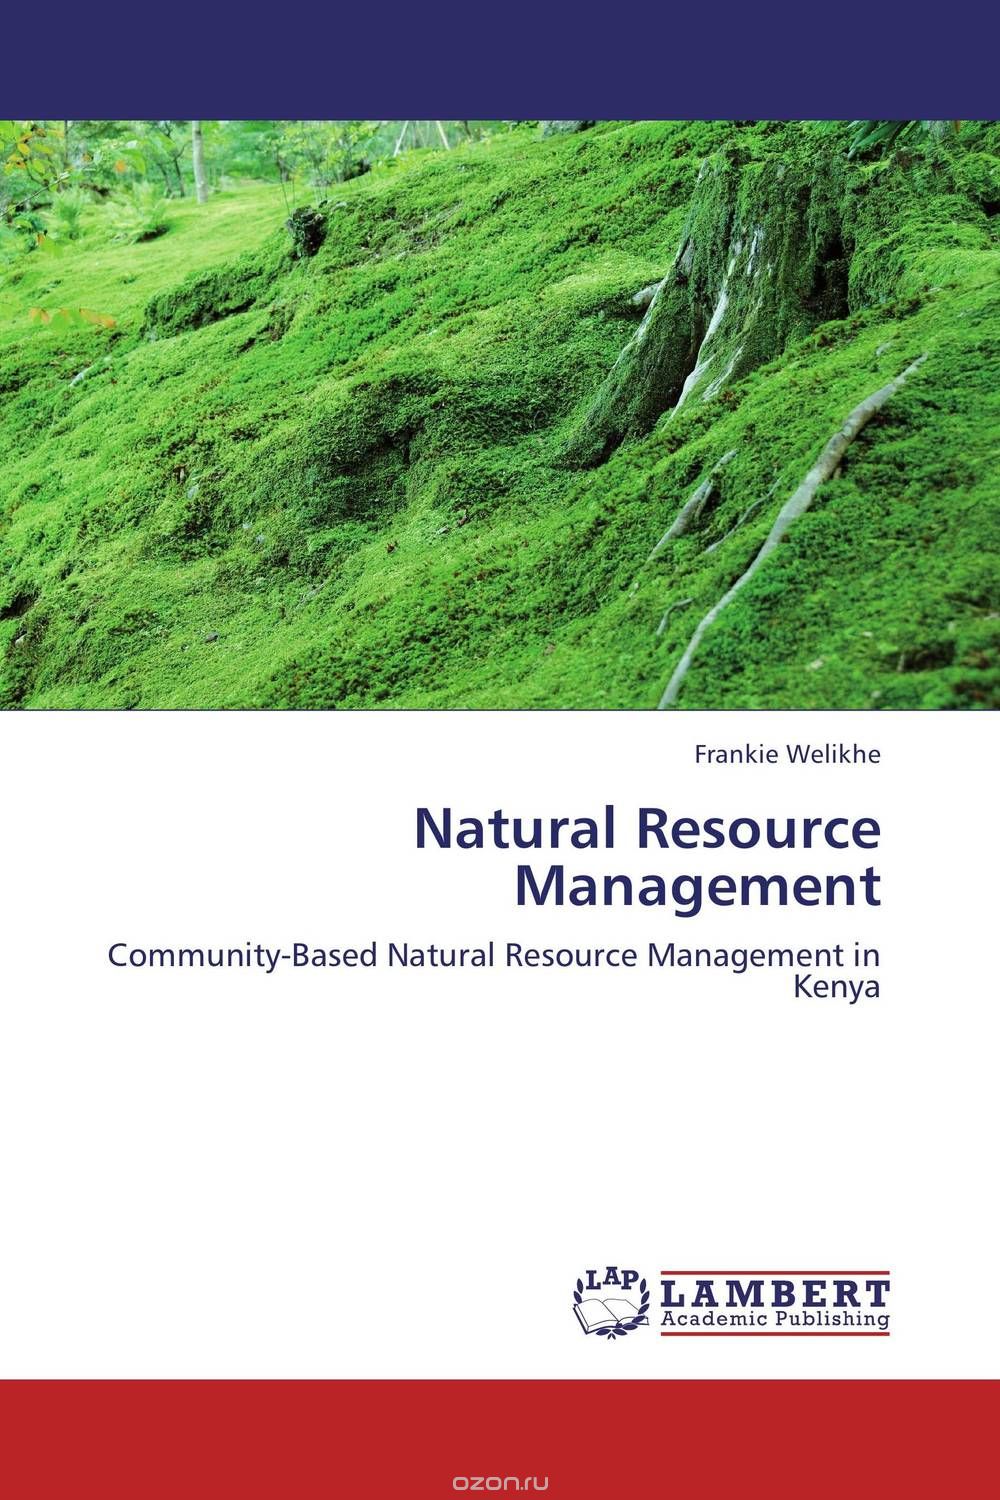 Скачать книгу "Natural Resource Management"